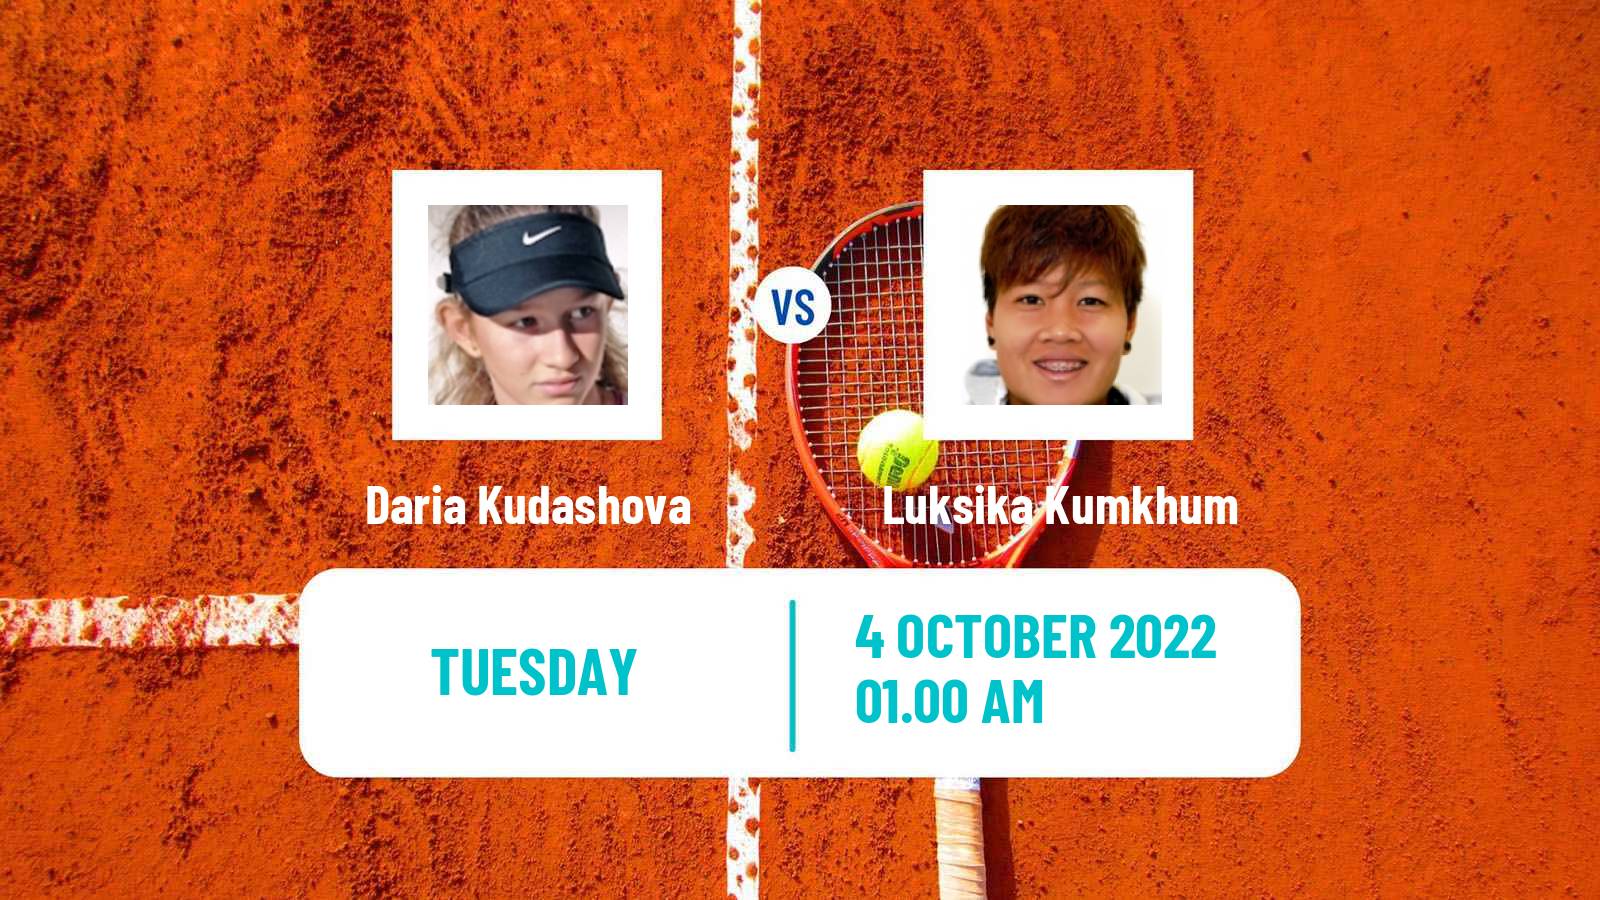 Tennis ITF Tournaments Daria Kudashova - Luksika Kumkhum